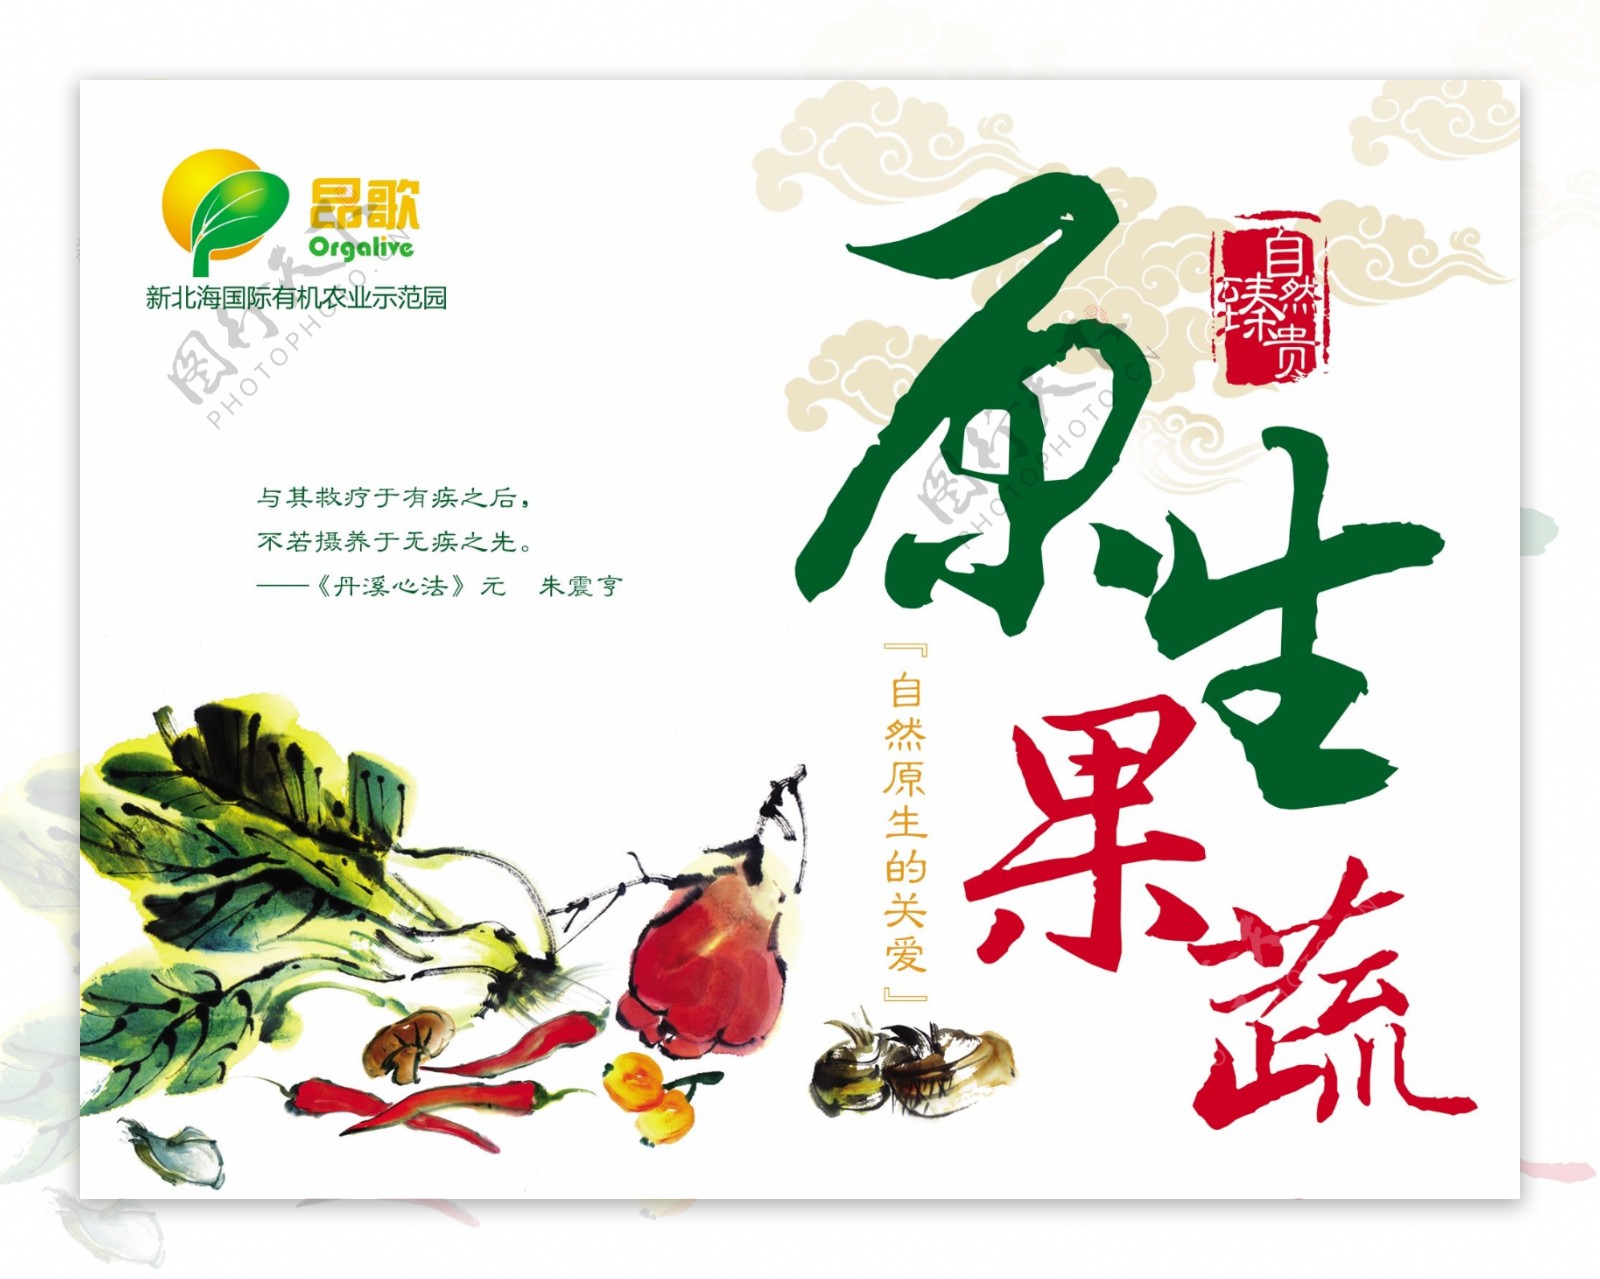 中国风蔬菜包装设计图片